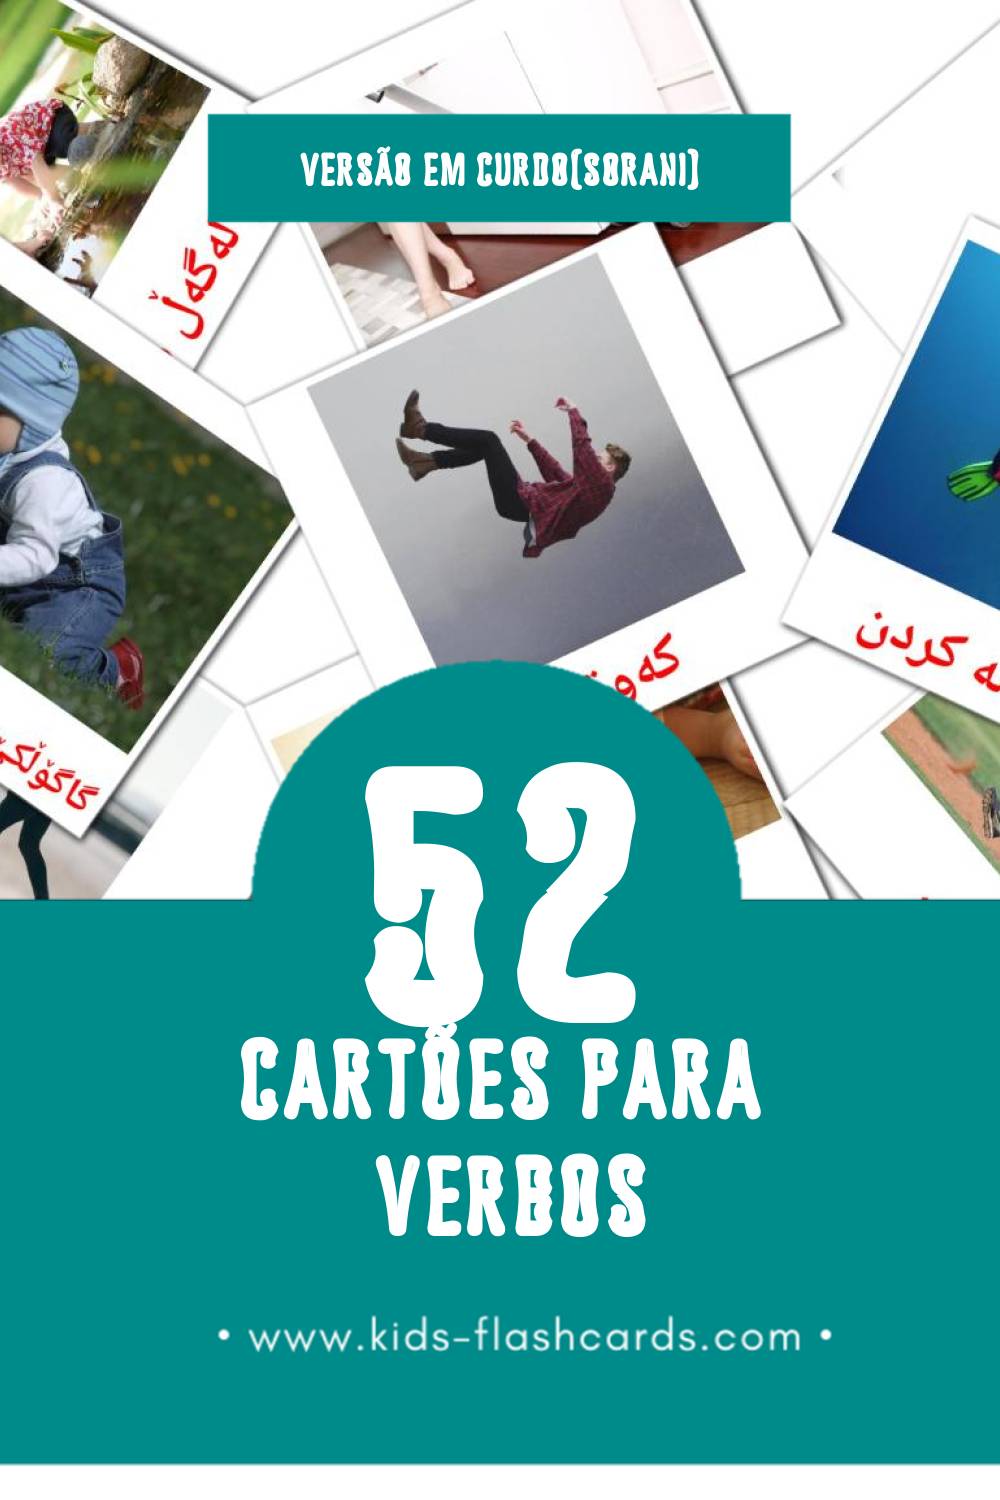 Flashcards de کردارەکان Visuais para Toddlers (52 cartões em Curdo(sorani))